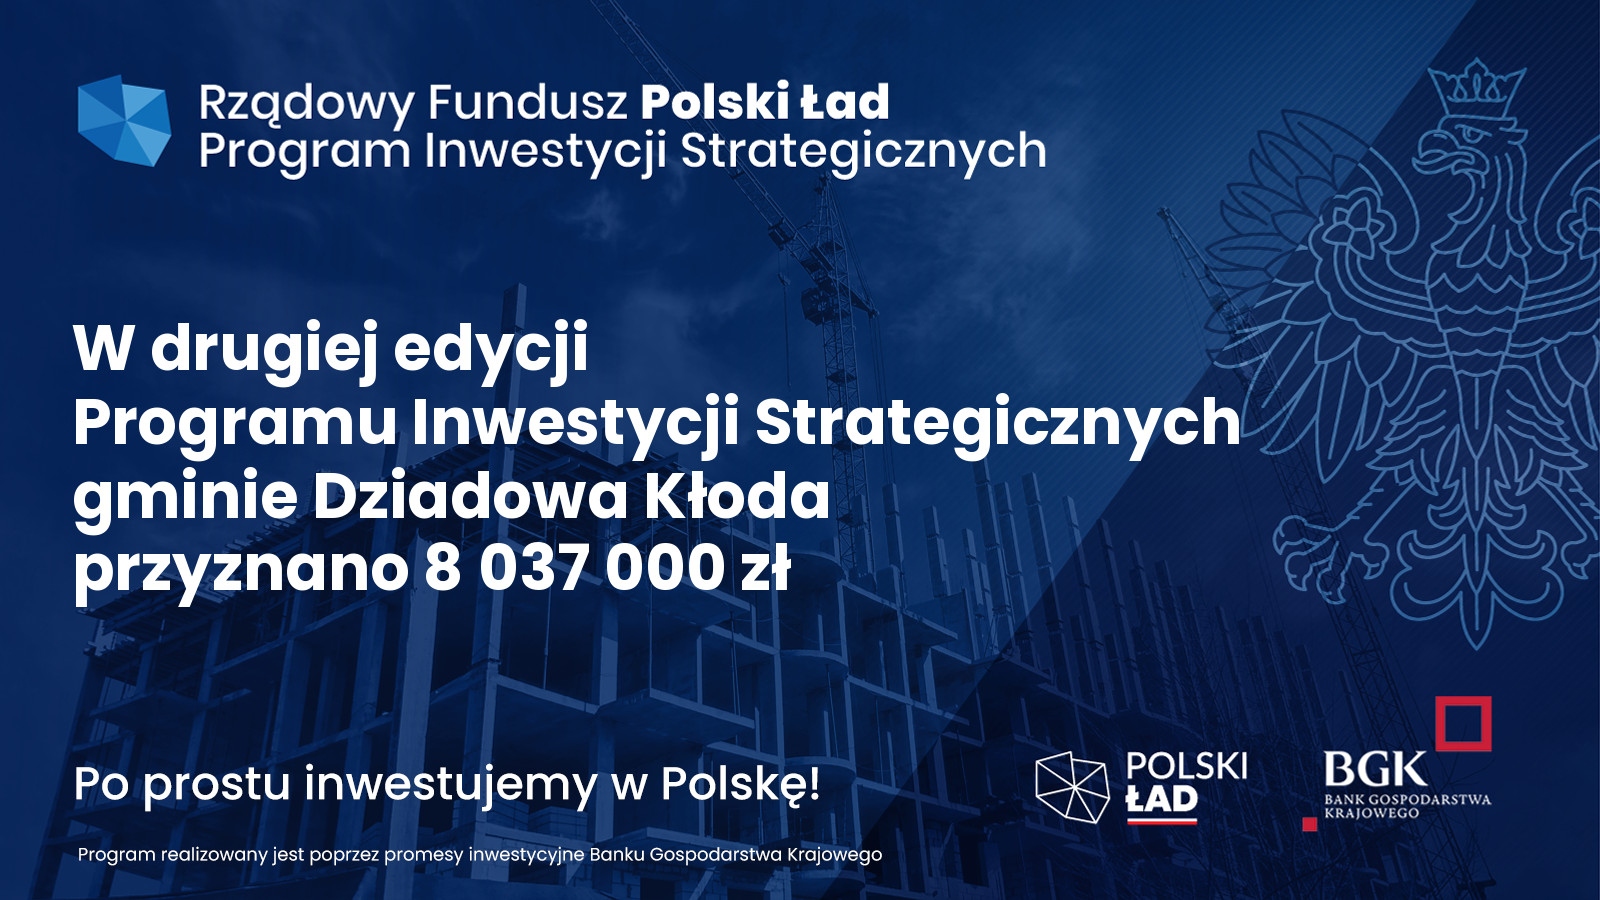 W drugiej edycji Programu Inwestycji Strategicznych Gminie Dziadowa Kłoda przyznano 8 037 000 zł